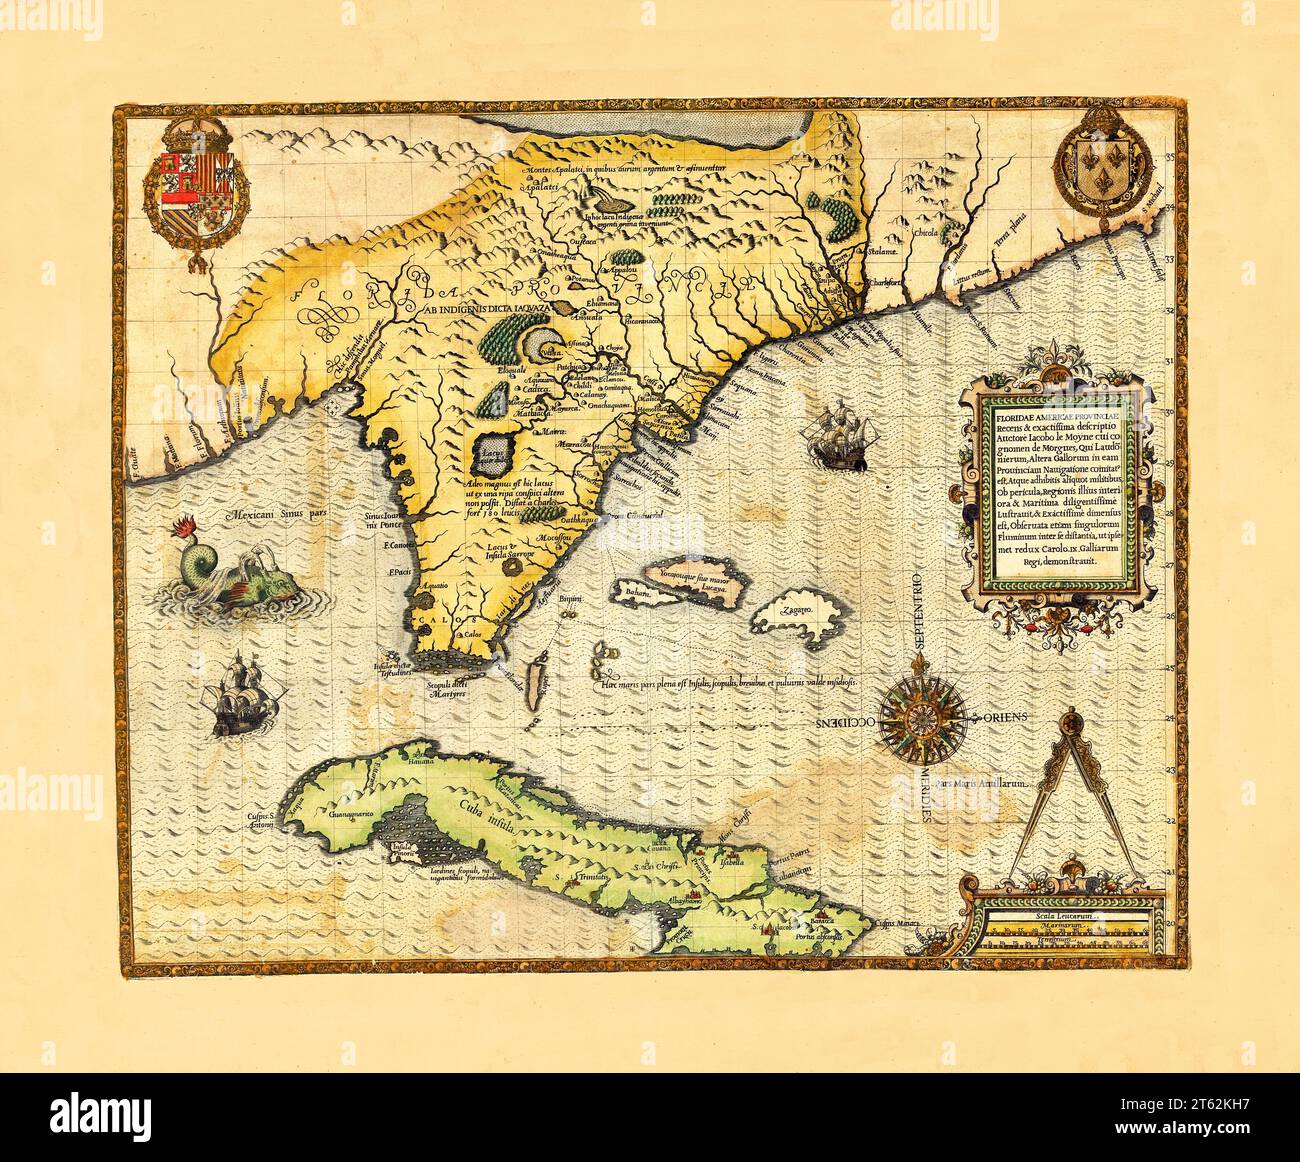 Ancienne carte de la Floride. Par le Moyne de morgues, publ. 1591 Banque D'Images